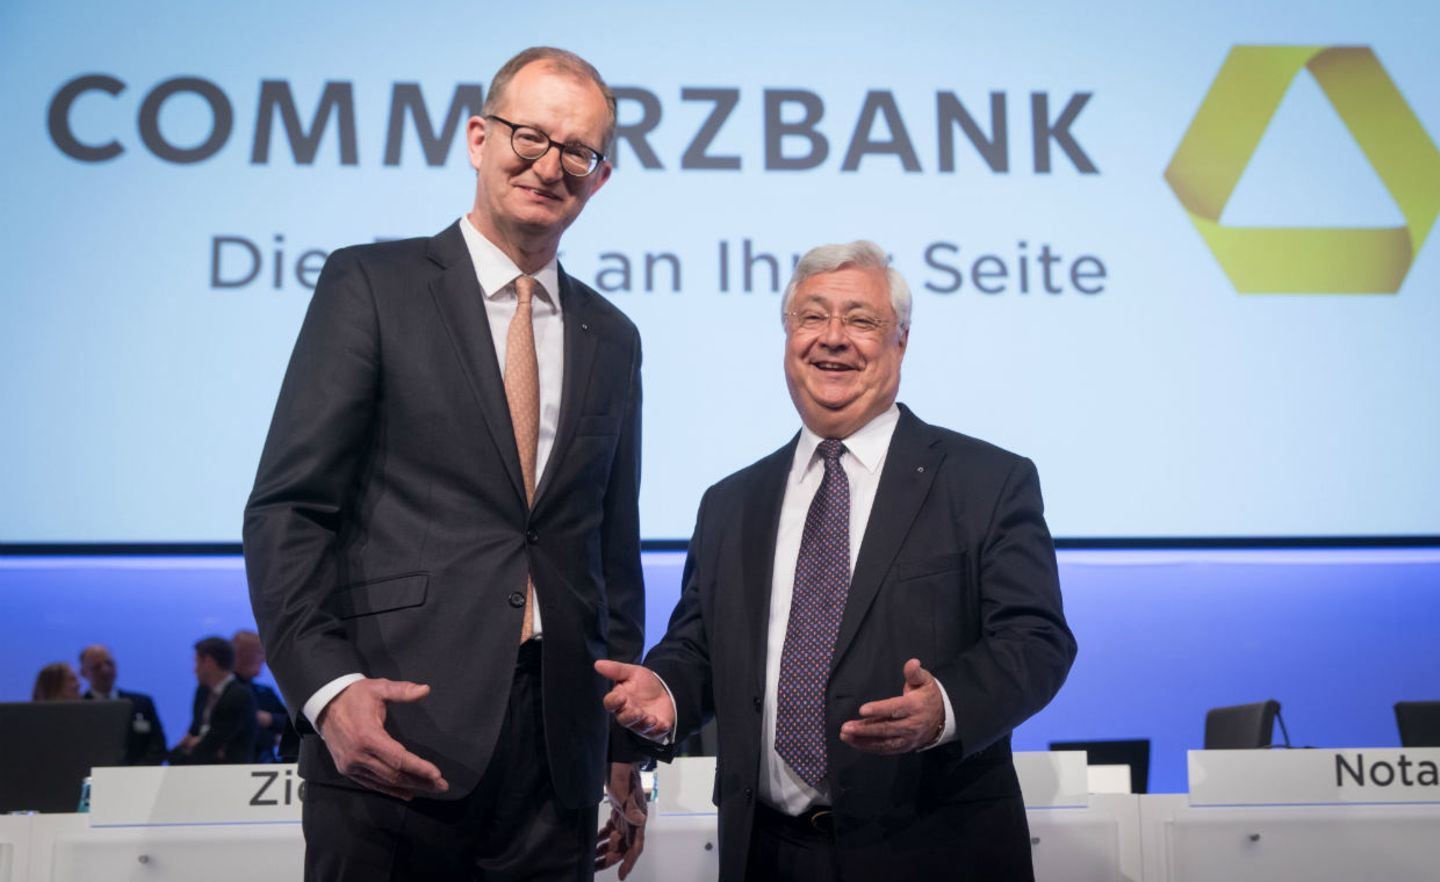 Der Vorstandsvorsitzende Martin Zielke (l) und der scheidende Aufsichtsratsvorsitzende Klaus-Peter Müller stehen zu Beginn der Hauptversammlung der Commerzbank auf der Bühne.